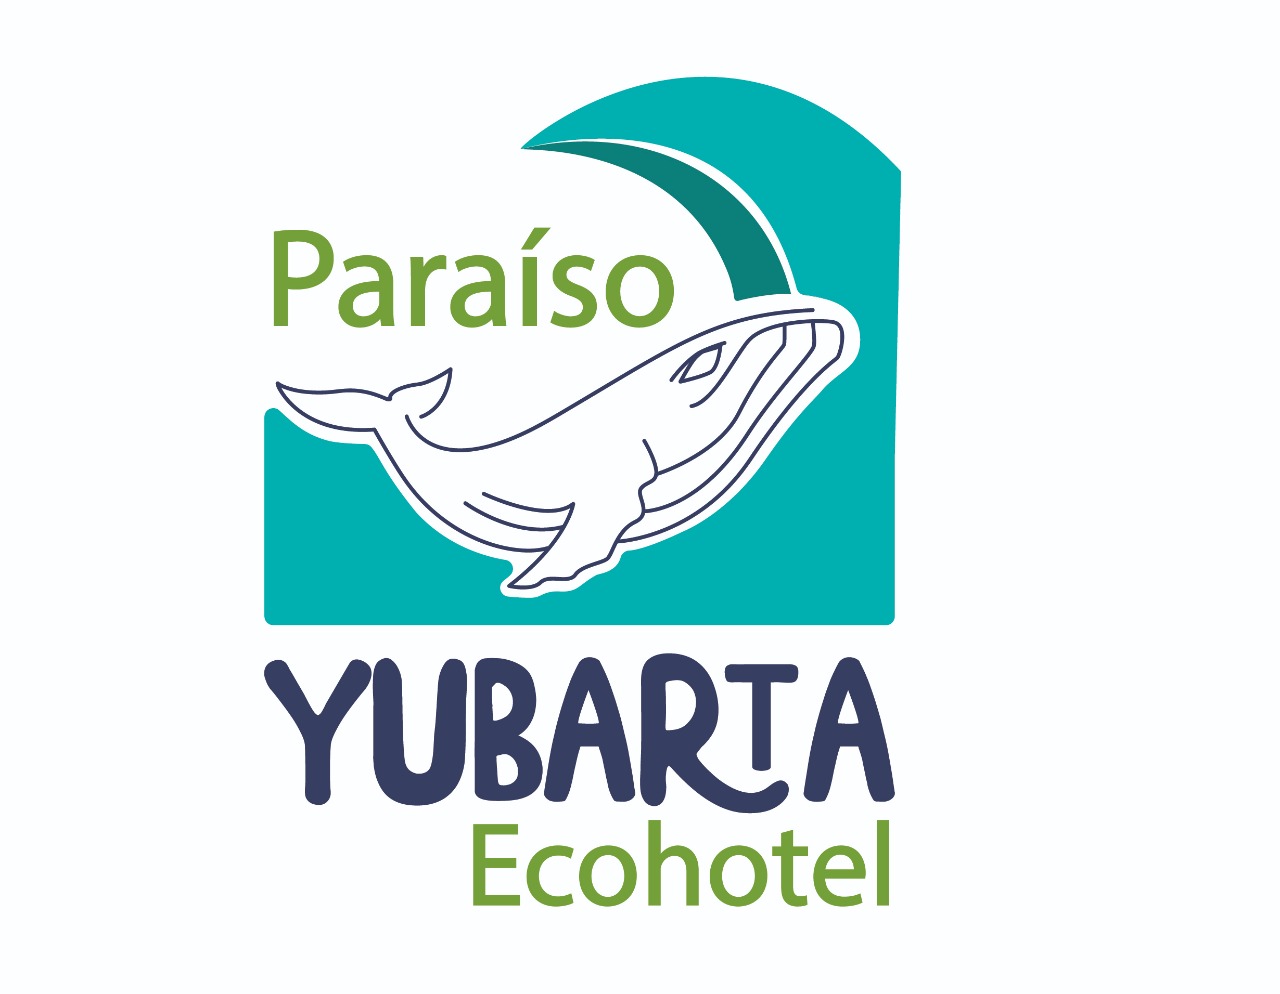 Paraiso Yubarta